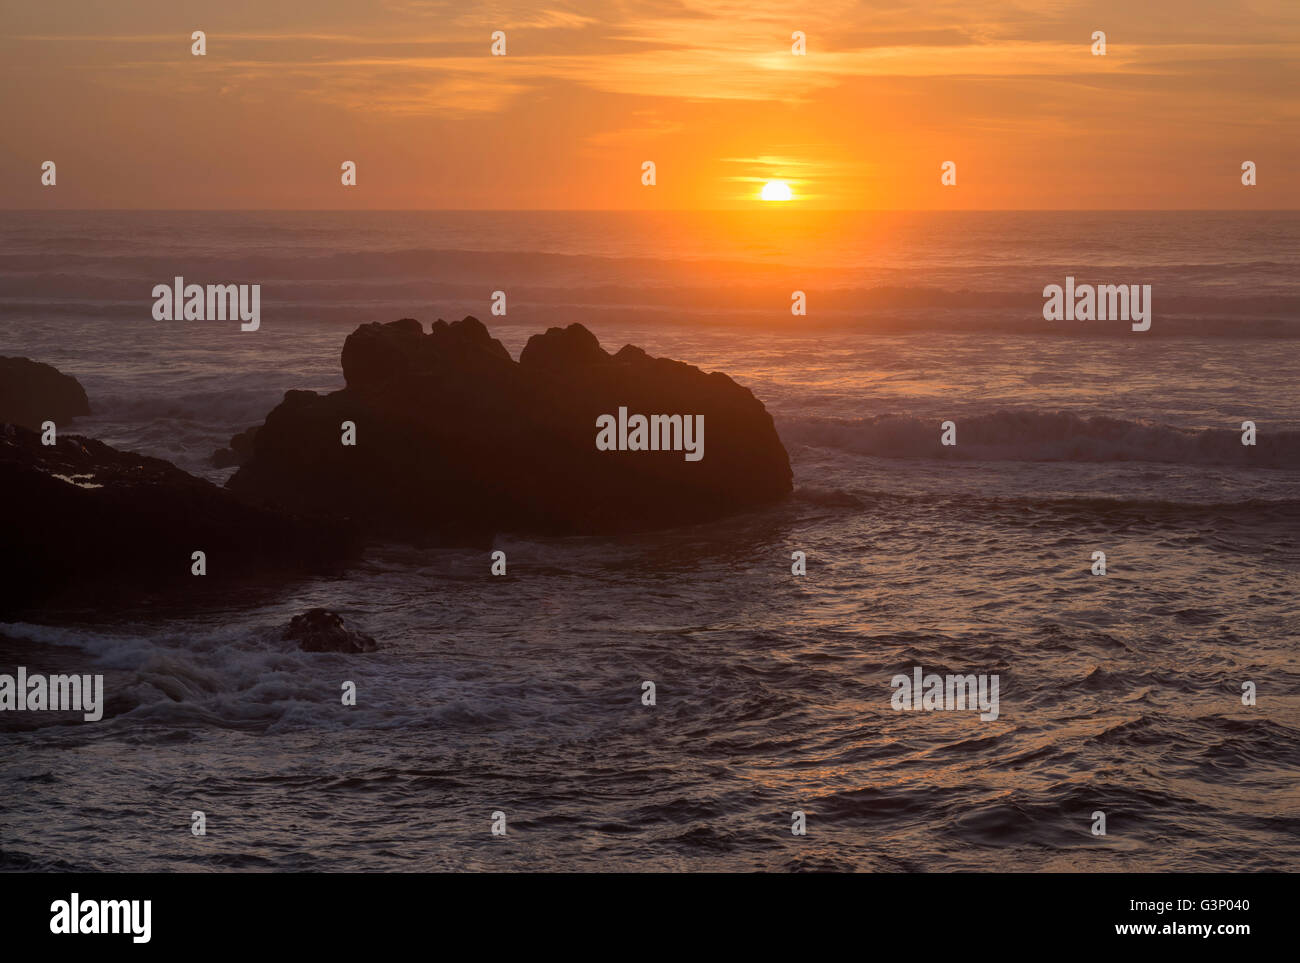 USA, Oregon, Yachats, Sunset over basalt sea stacks. Stock Photo